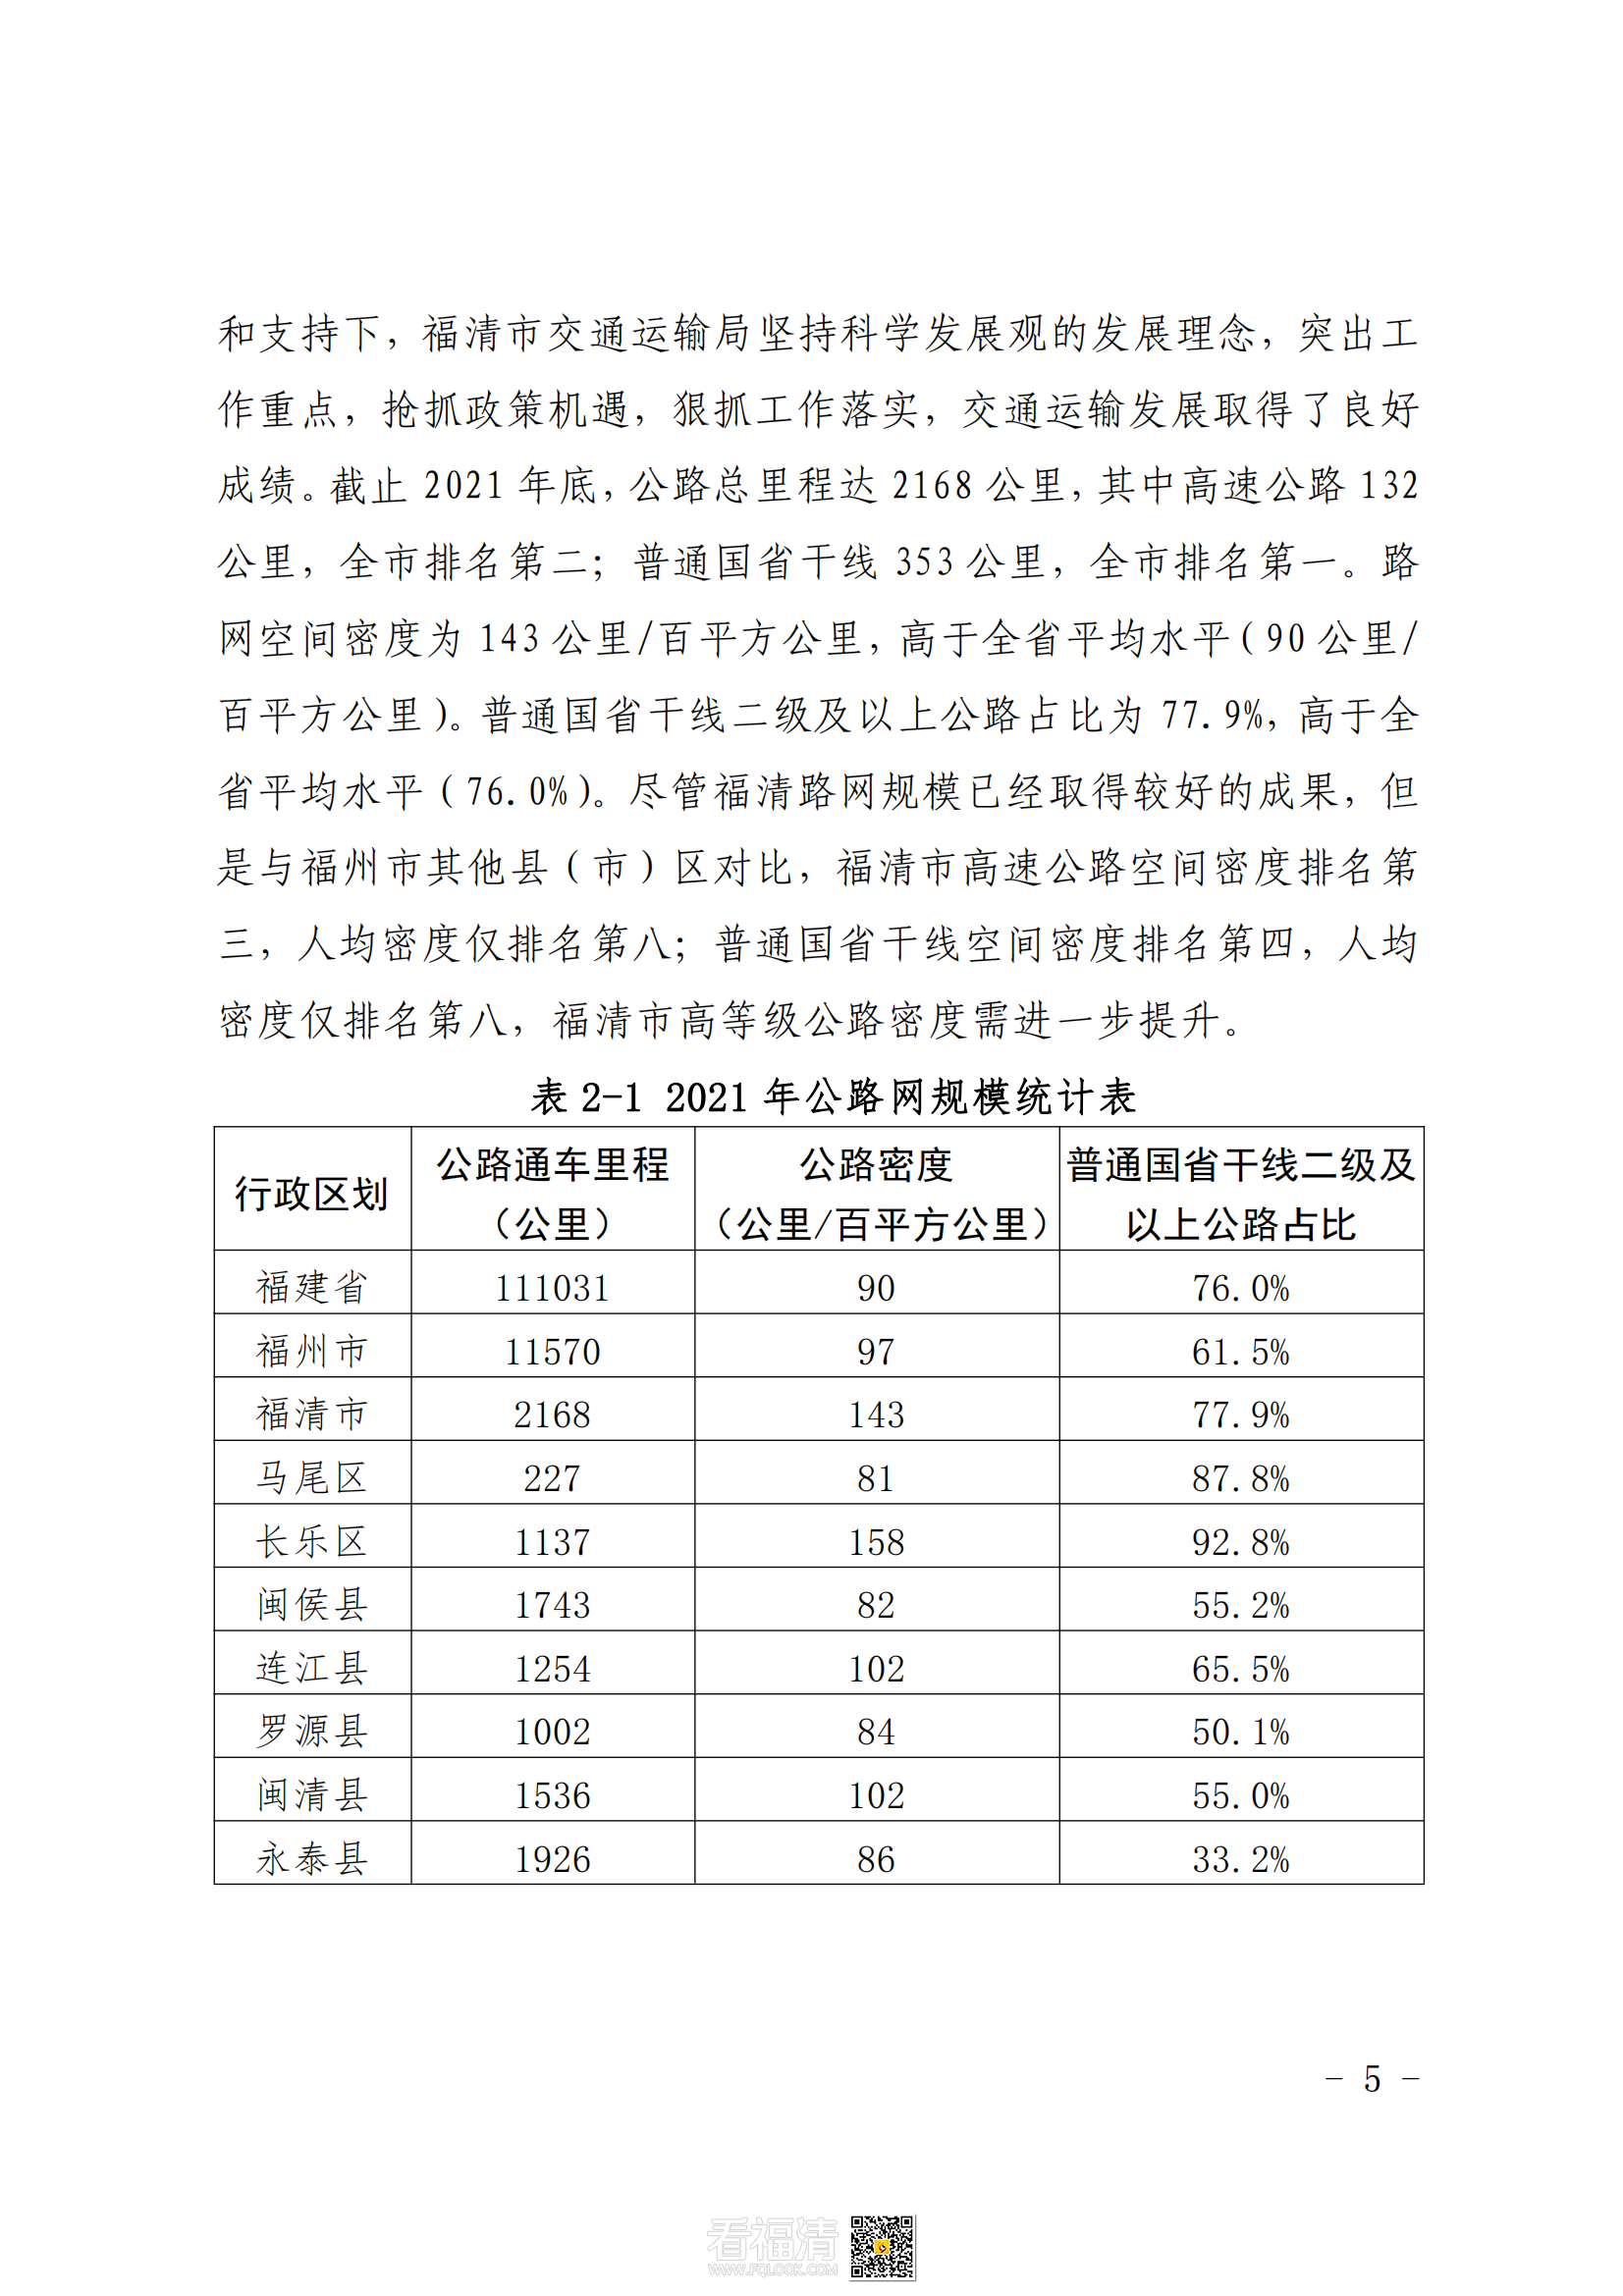 福清市公路干线路网规划（2021—2035）_08.png